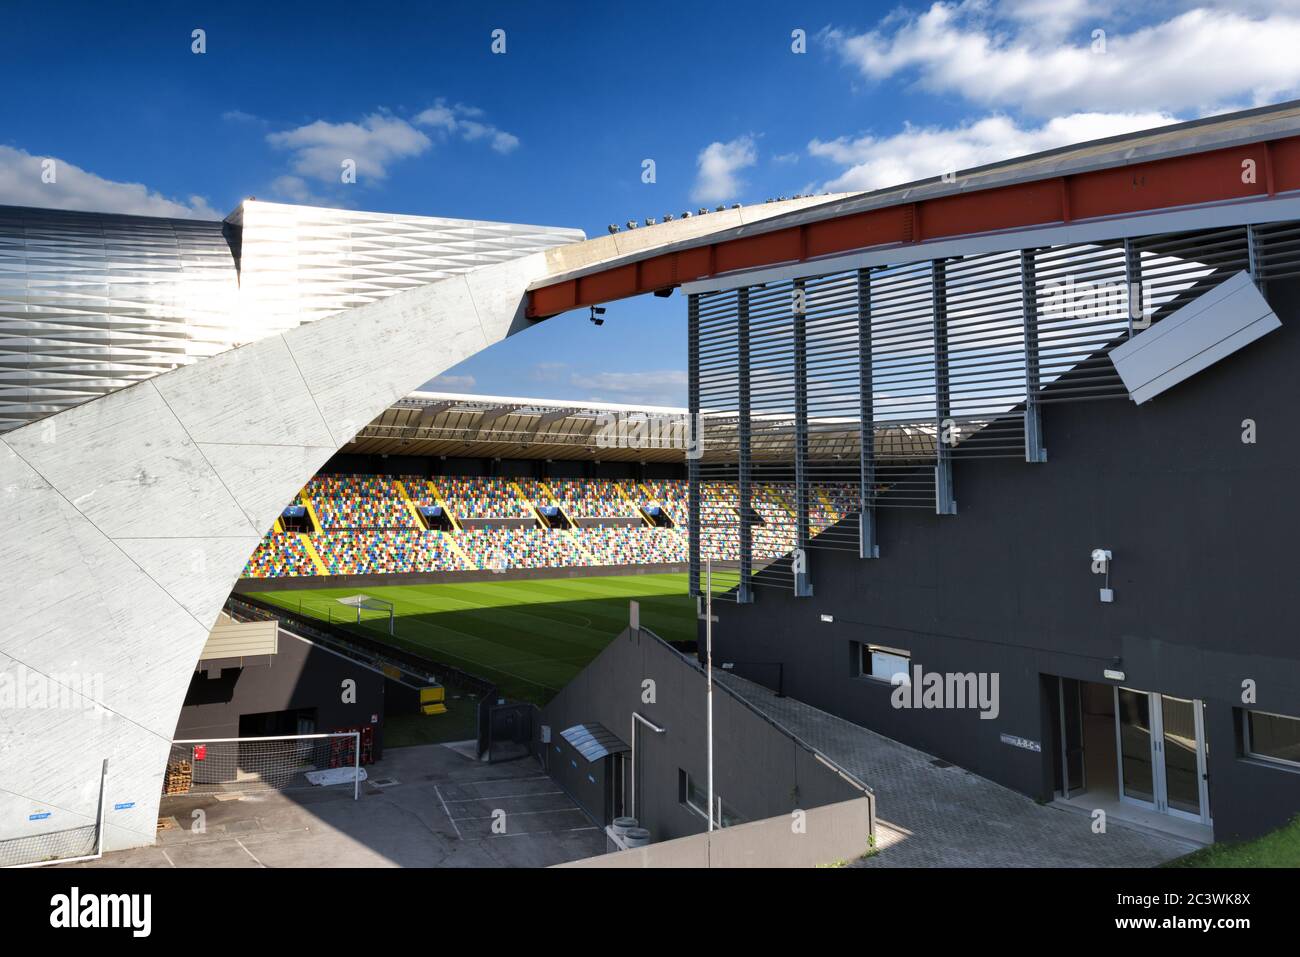 Stadio vuoto campo da calcio o da calcio, terrazze e stand all'Arena Dacia - Stadio Friuli, il principale stadio della regione Friuli Venezia Giulia. Foto Stock